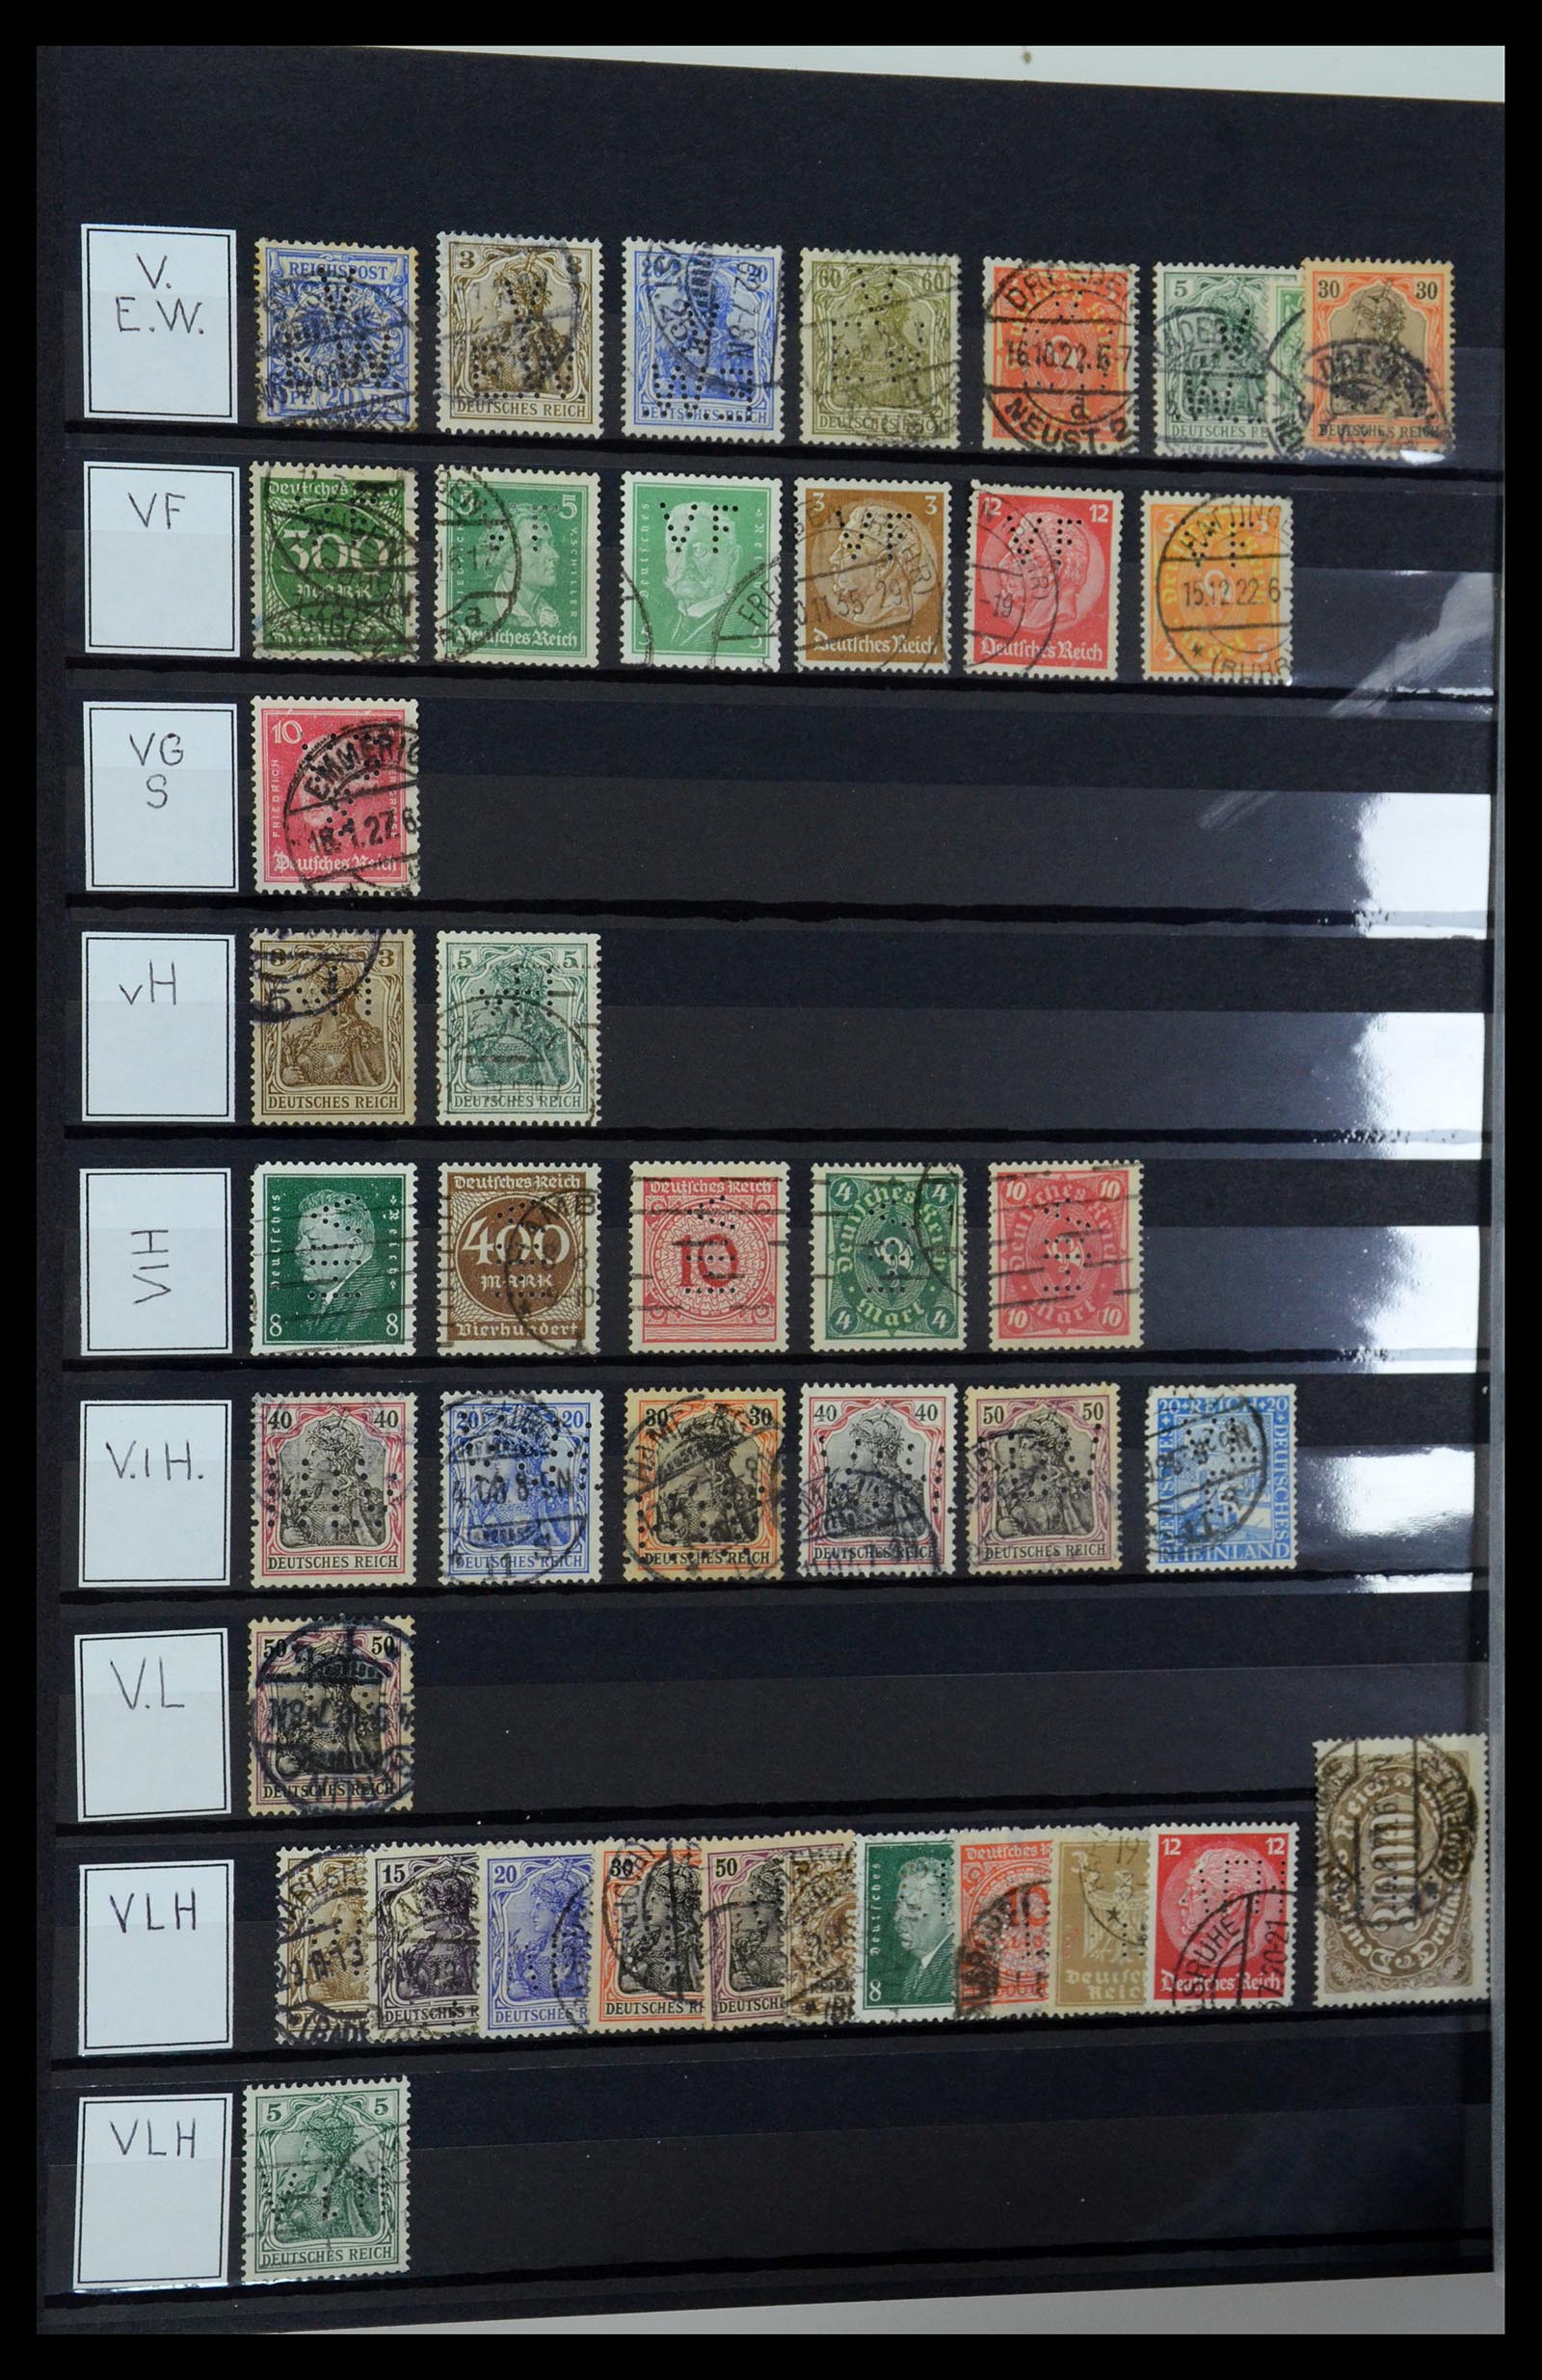 36405 329 - Stamp collection 36405 German Reich perfins 1880-1945.